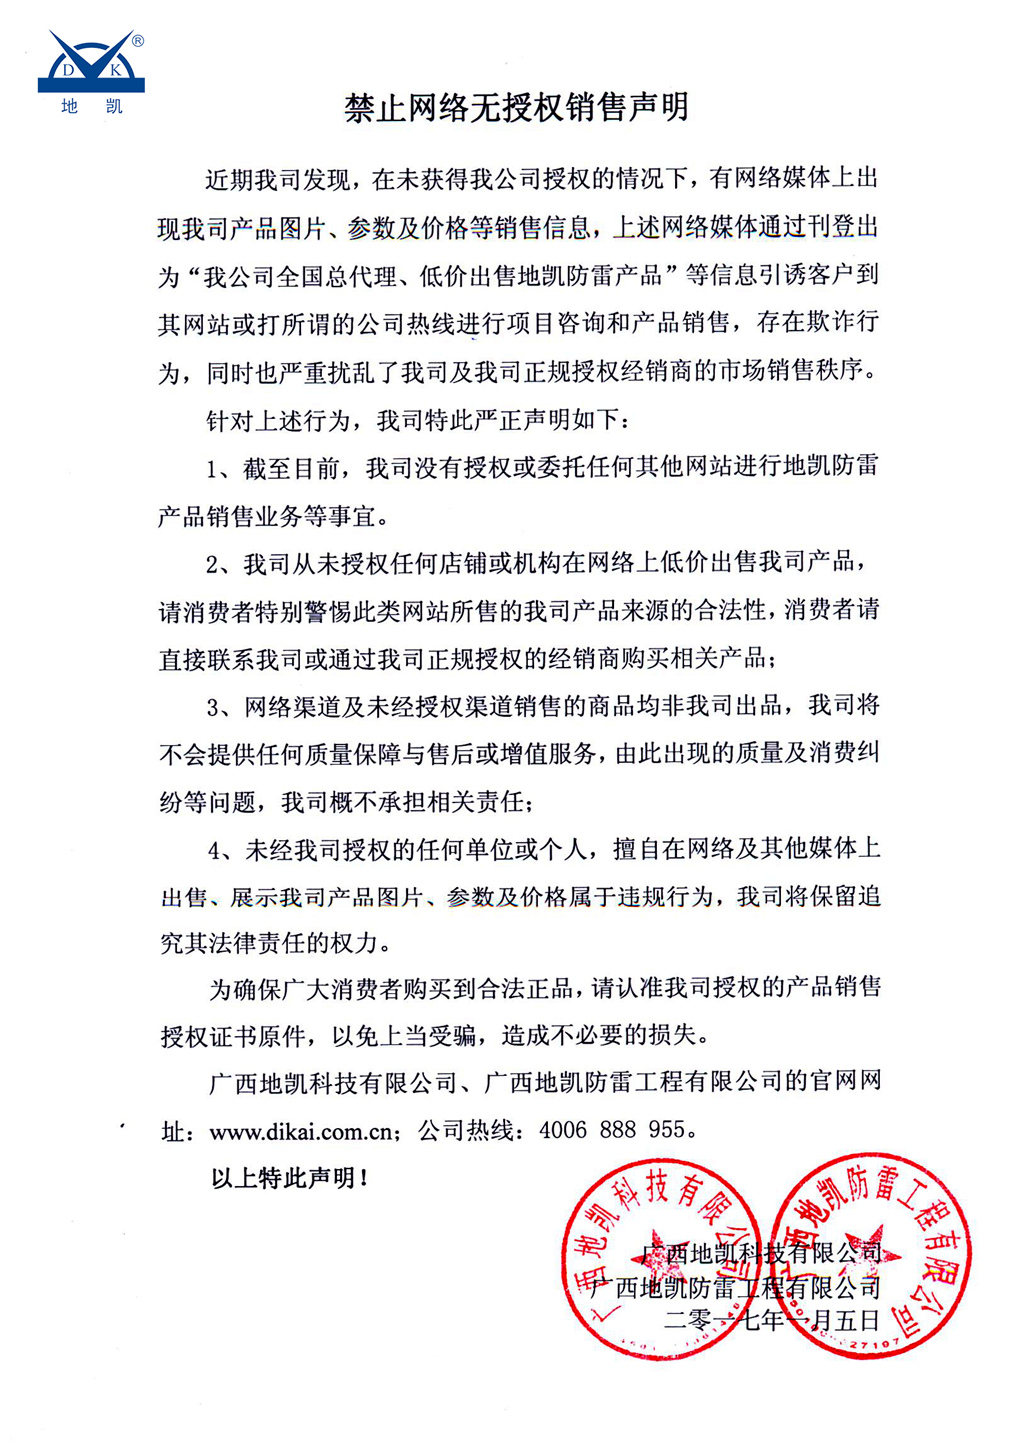 广西地凯防雷公司无网上授权销售声明